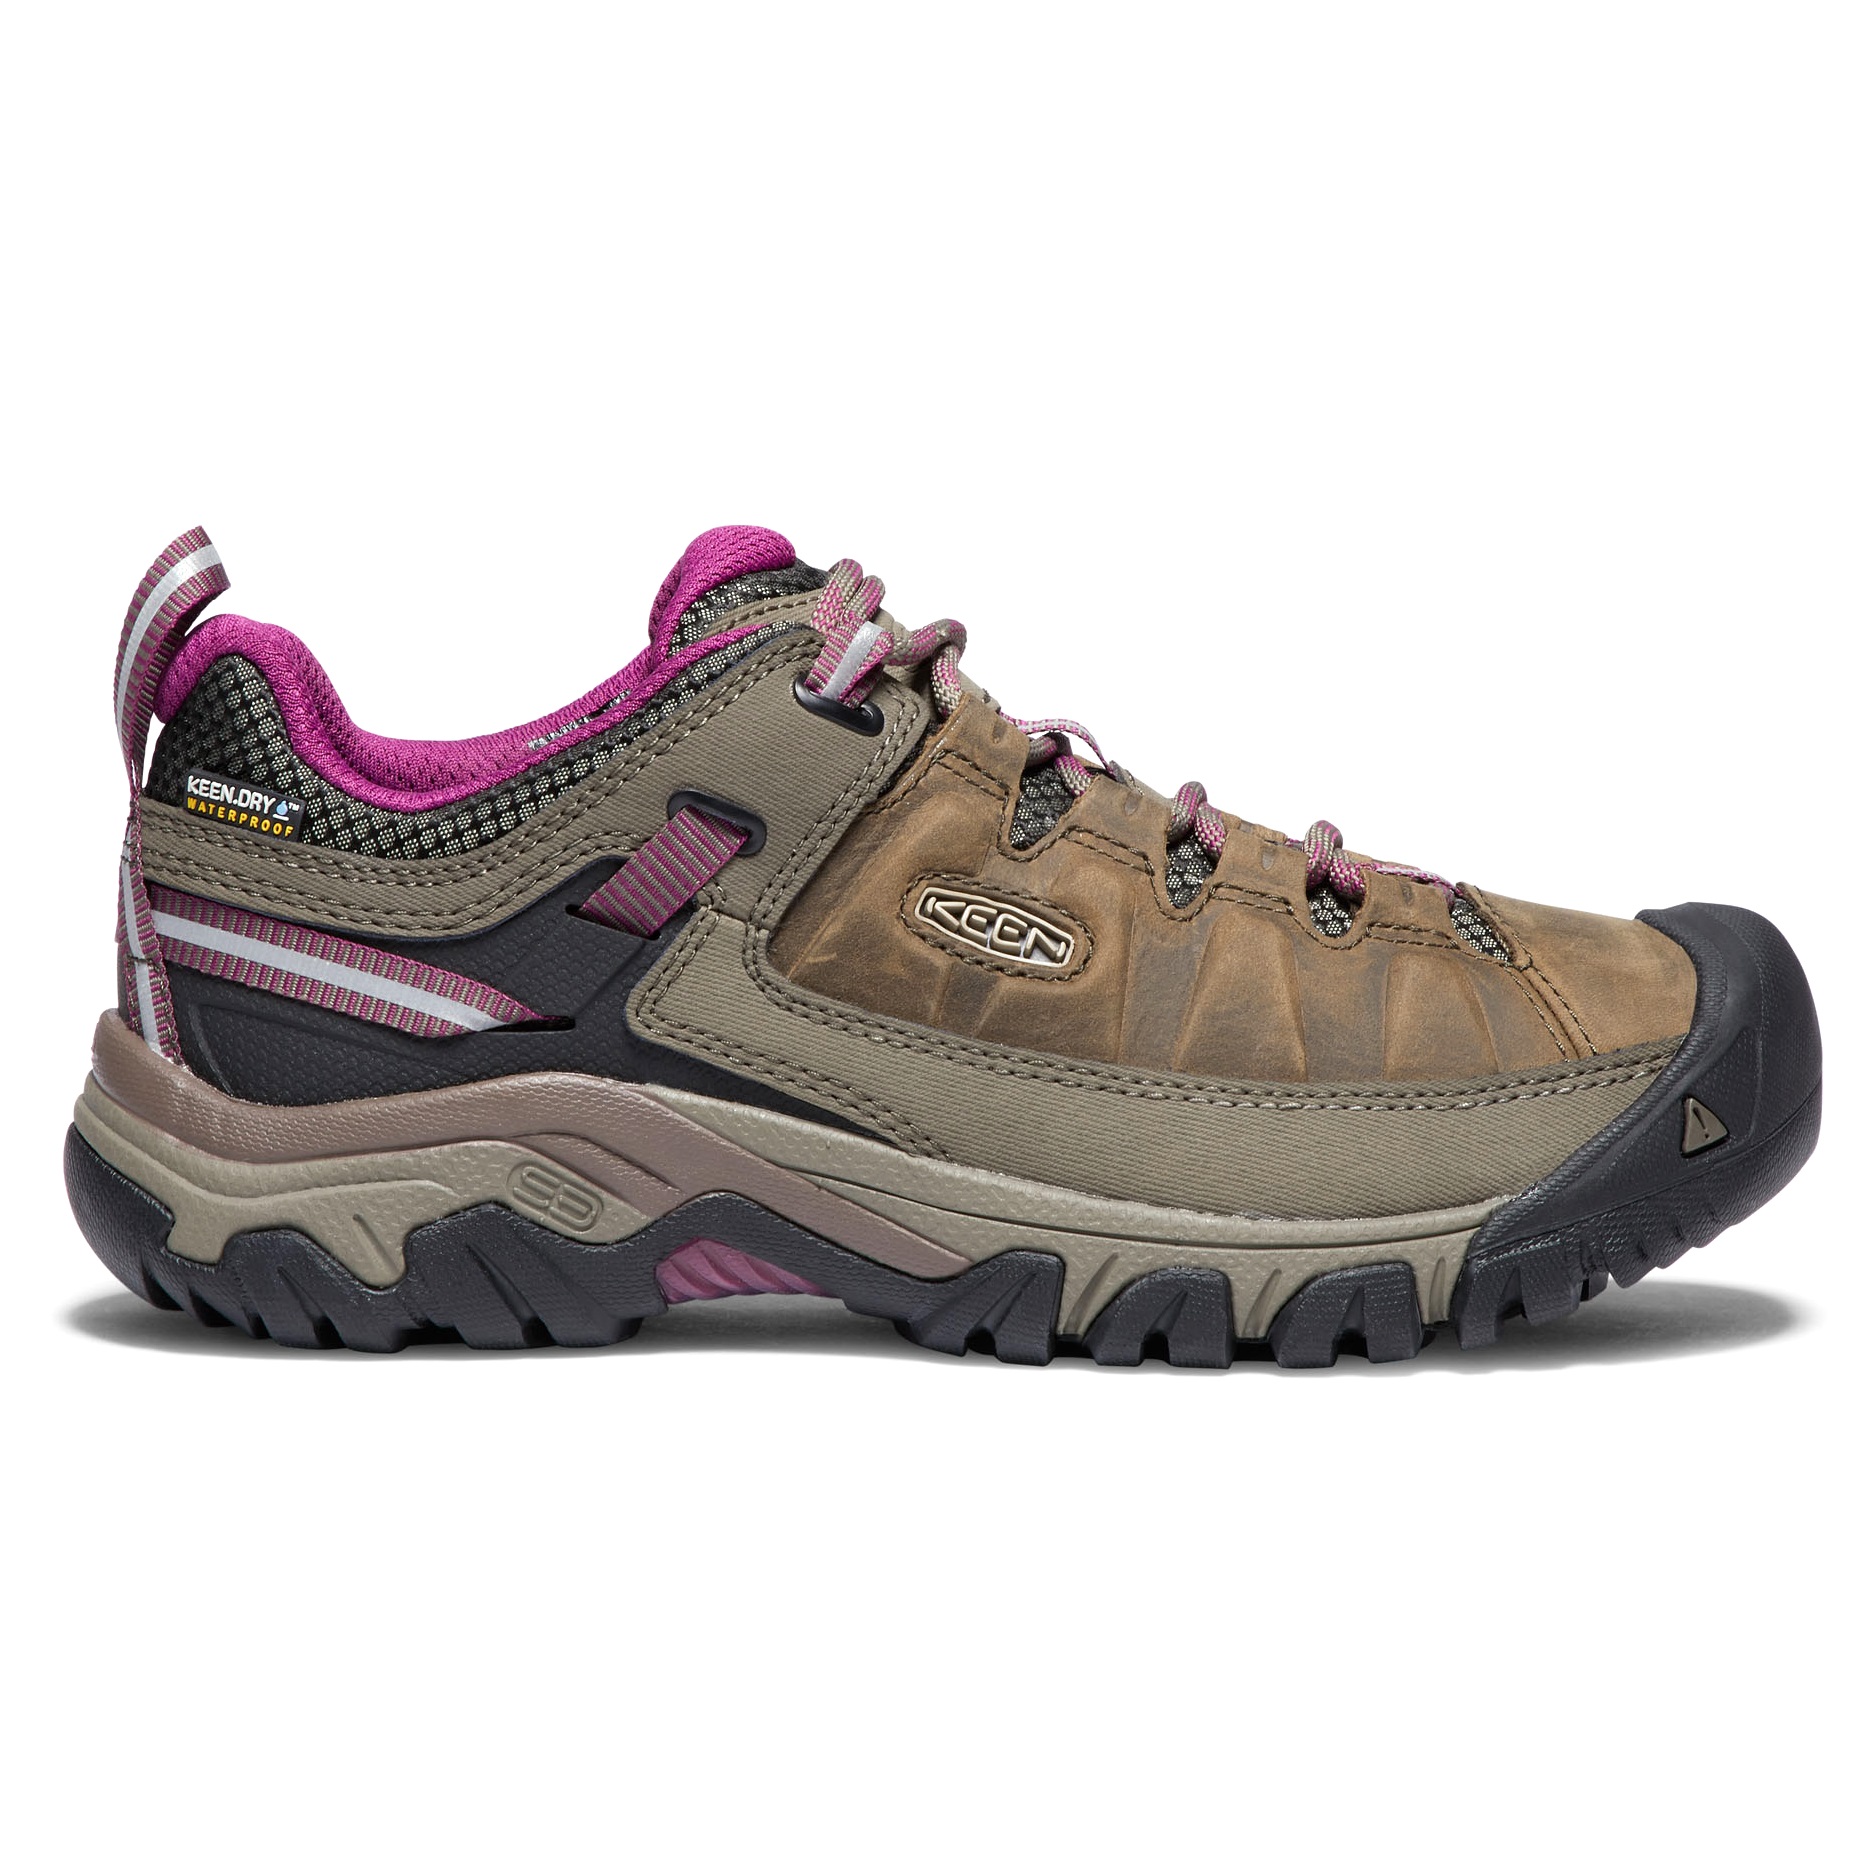 Keen Women's Targhee III Waterproof Hiking Shoes Weiss/Boysenberry 36, Weiss/Boysenberry